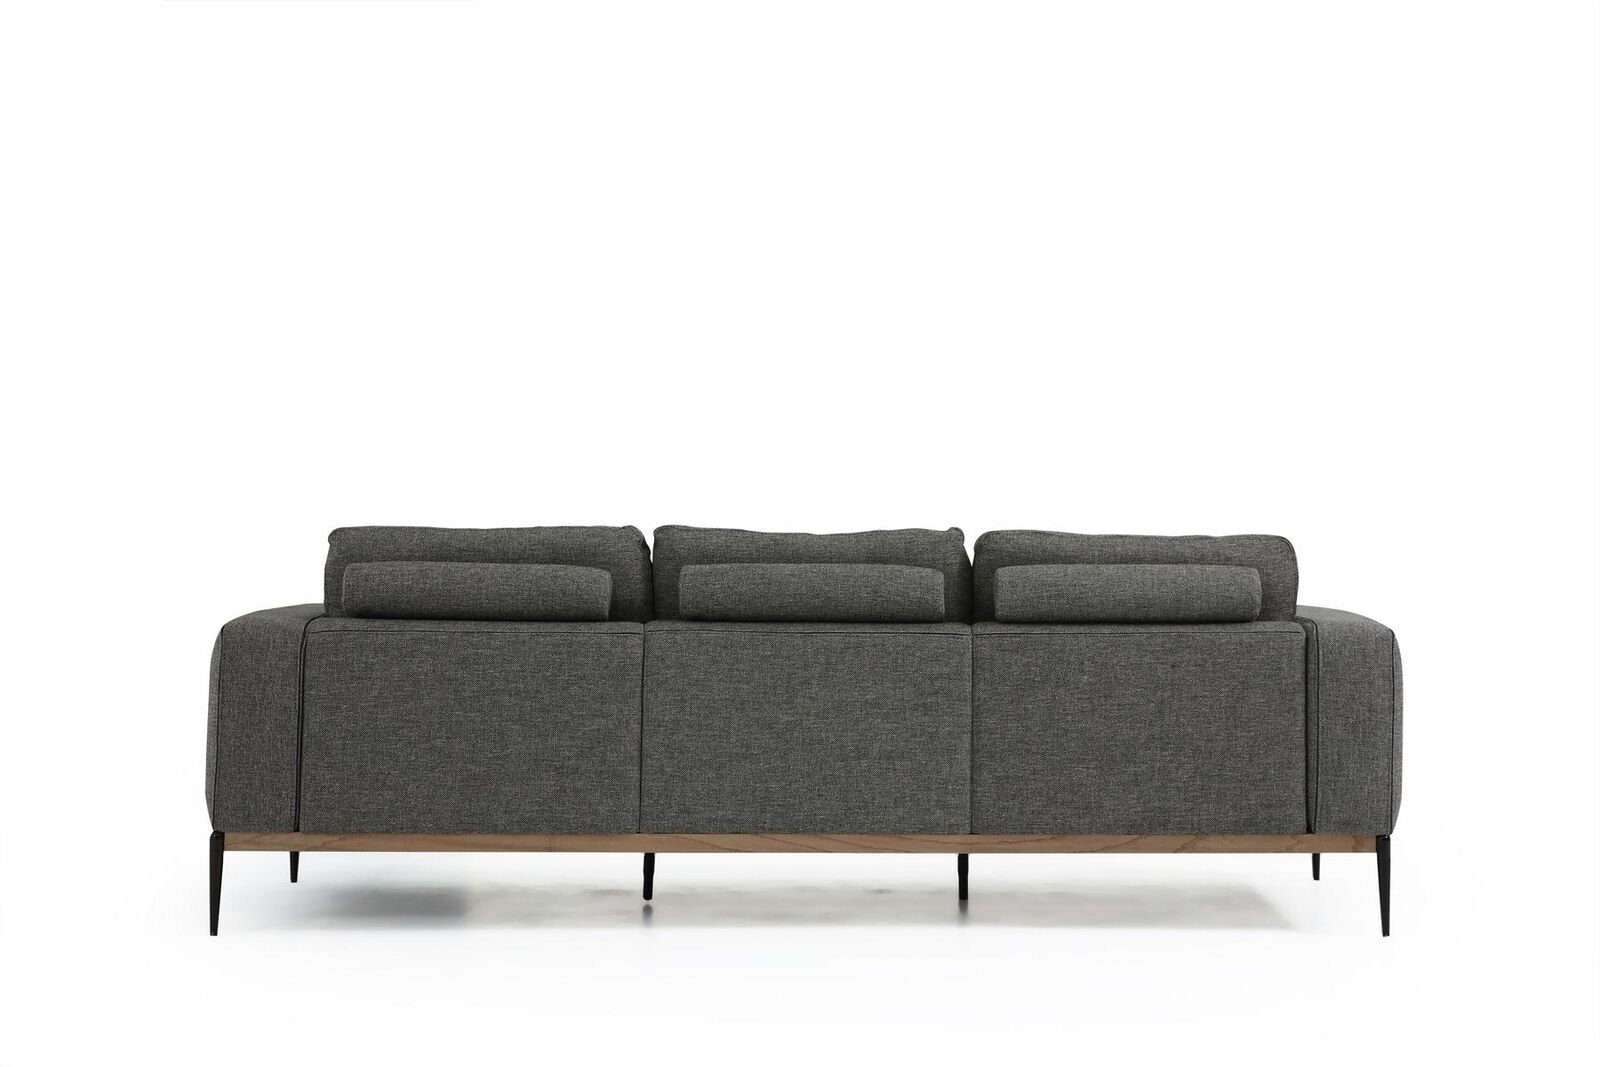 JVmoebel 3-Sitzer Zweisitzer Sofa 2 Grau, Teile, Design Modern Wohnzimmer Sitzer 1 Europa Sofas Stoff Made in